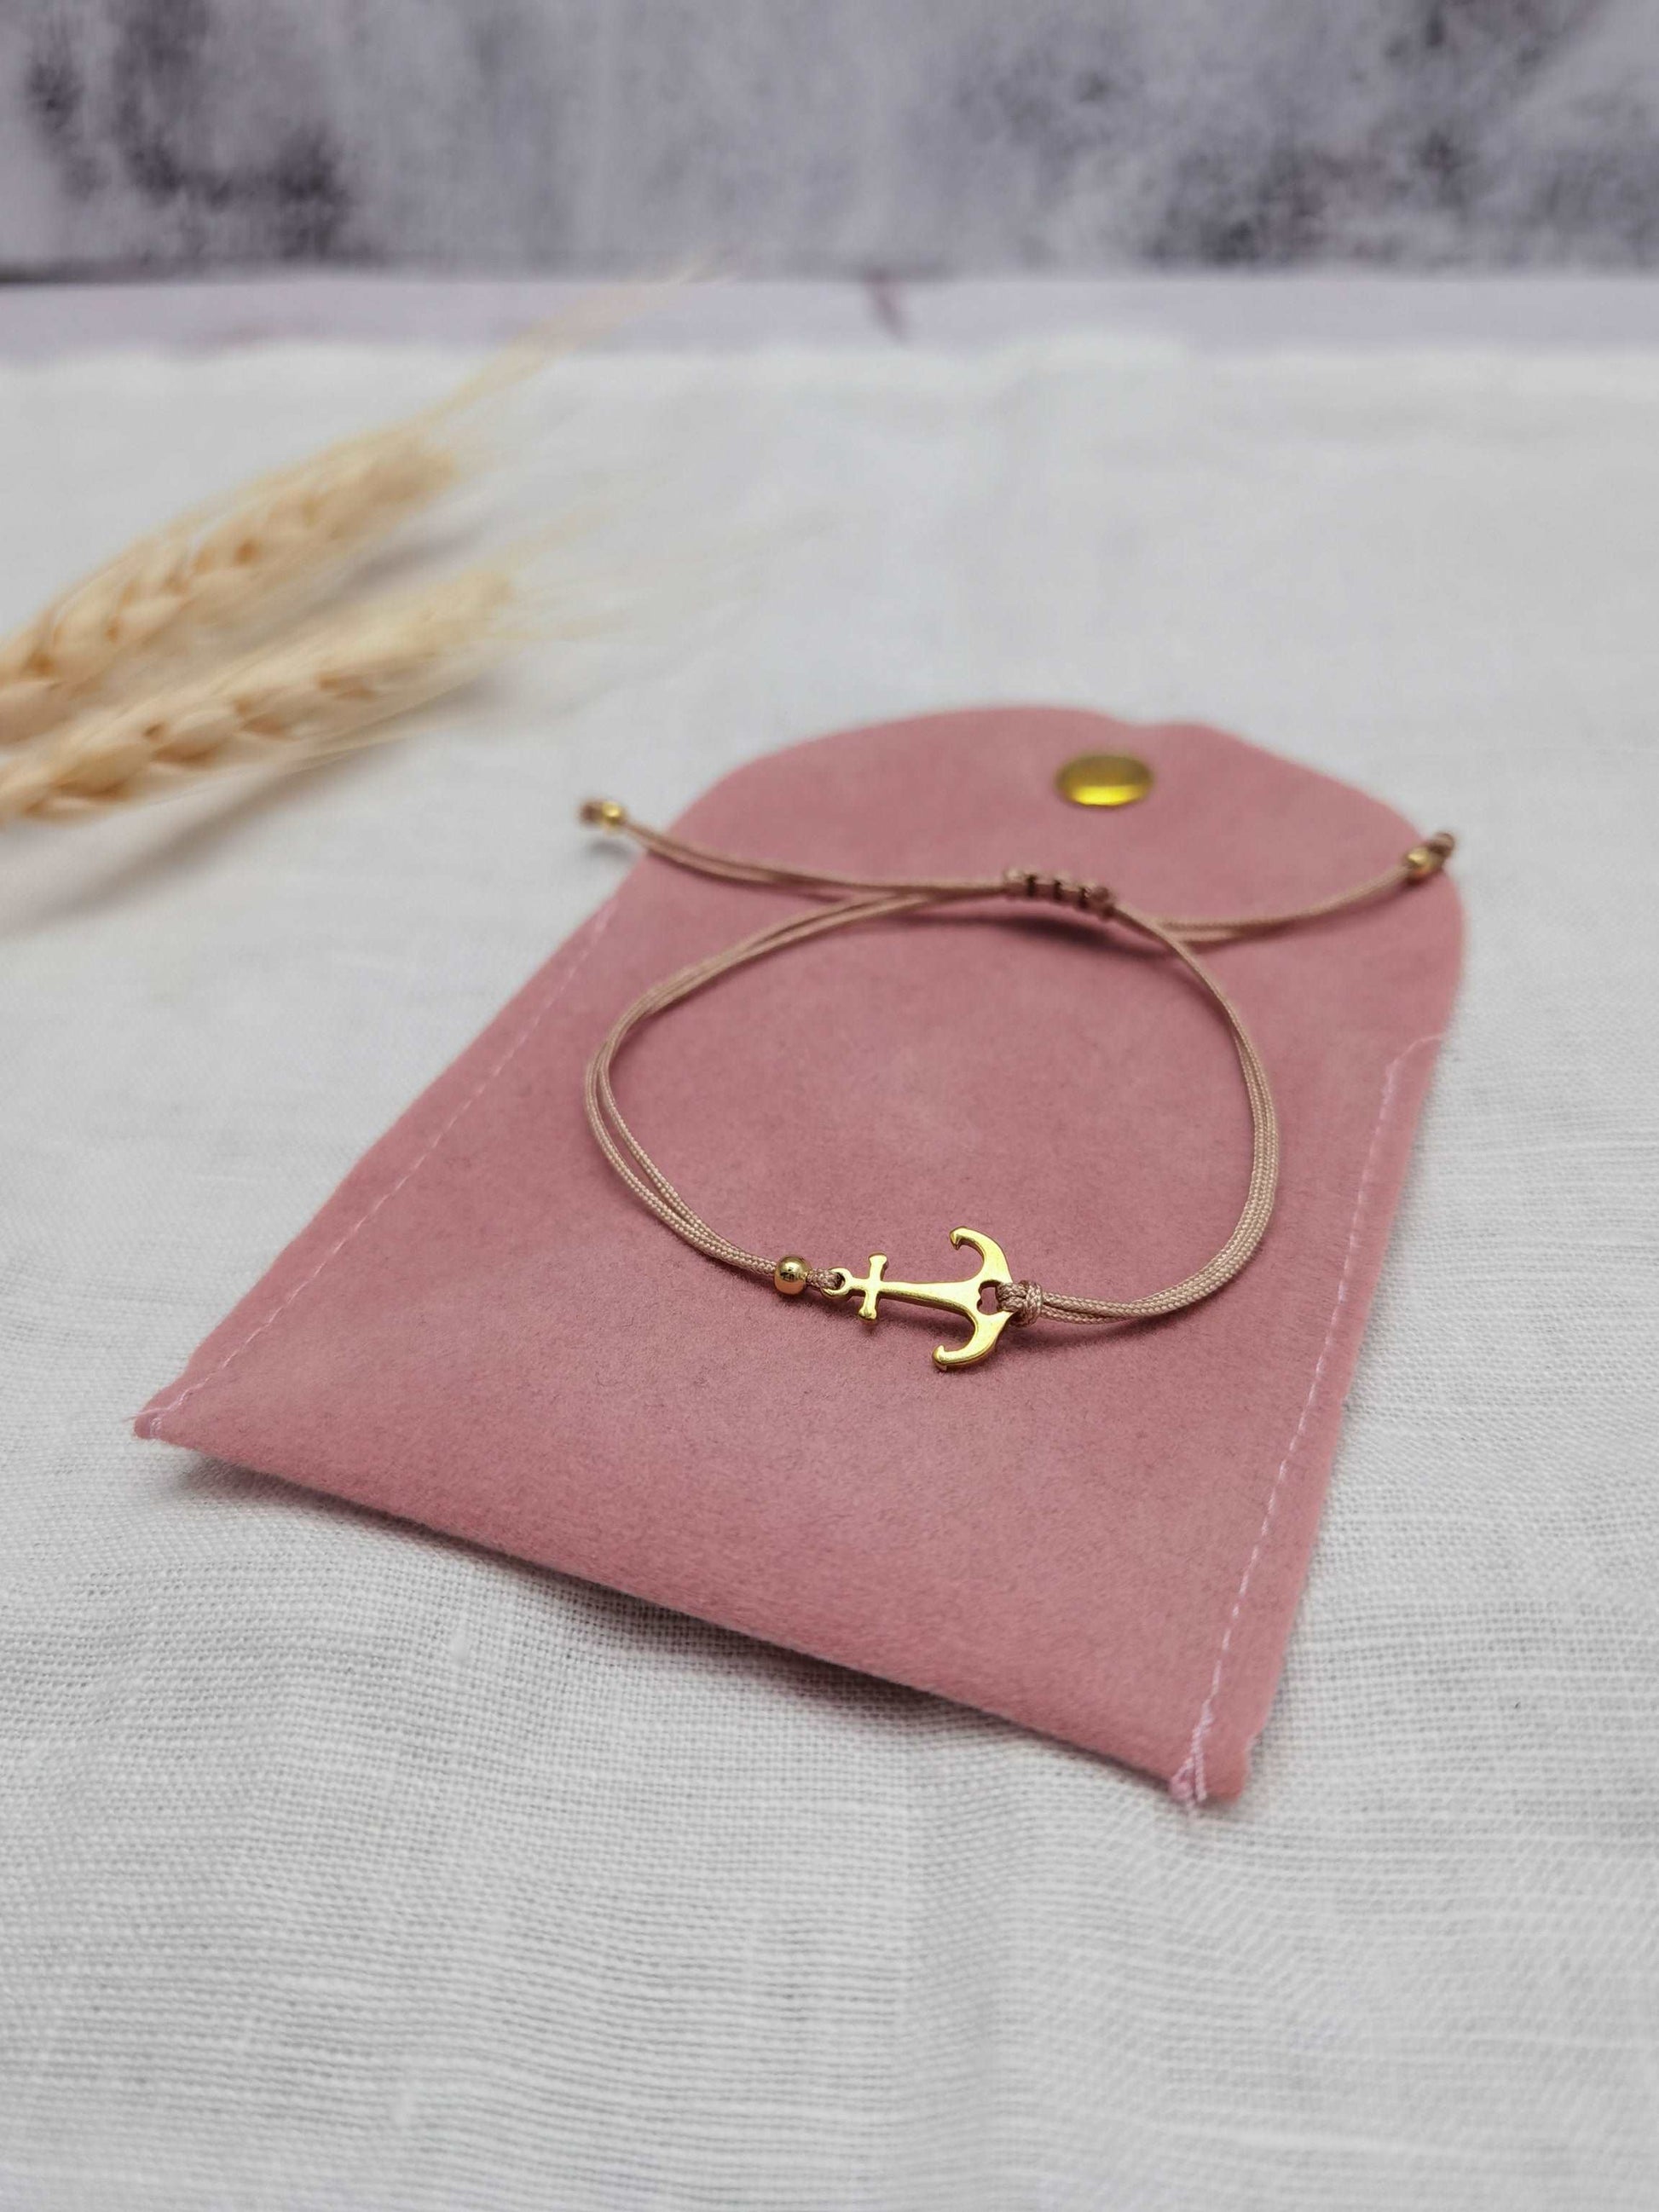 Anker Armband mit goldenem Edelstahl Anker und beigem Band auf einem rosa Schmucksäckchen